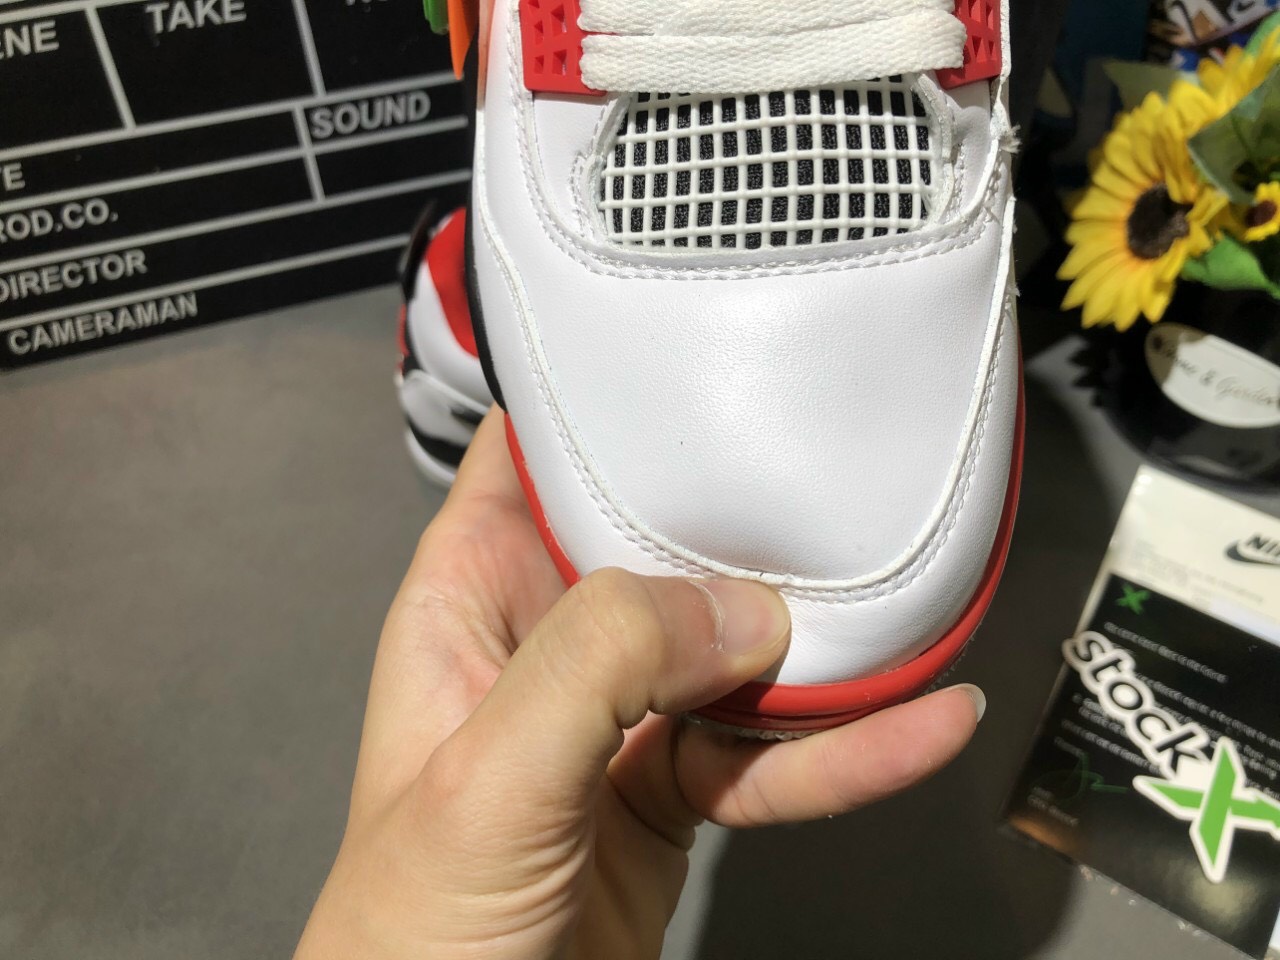 Giày Nike Air Jordan 4 Đỏ Siêu Cấp